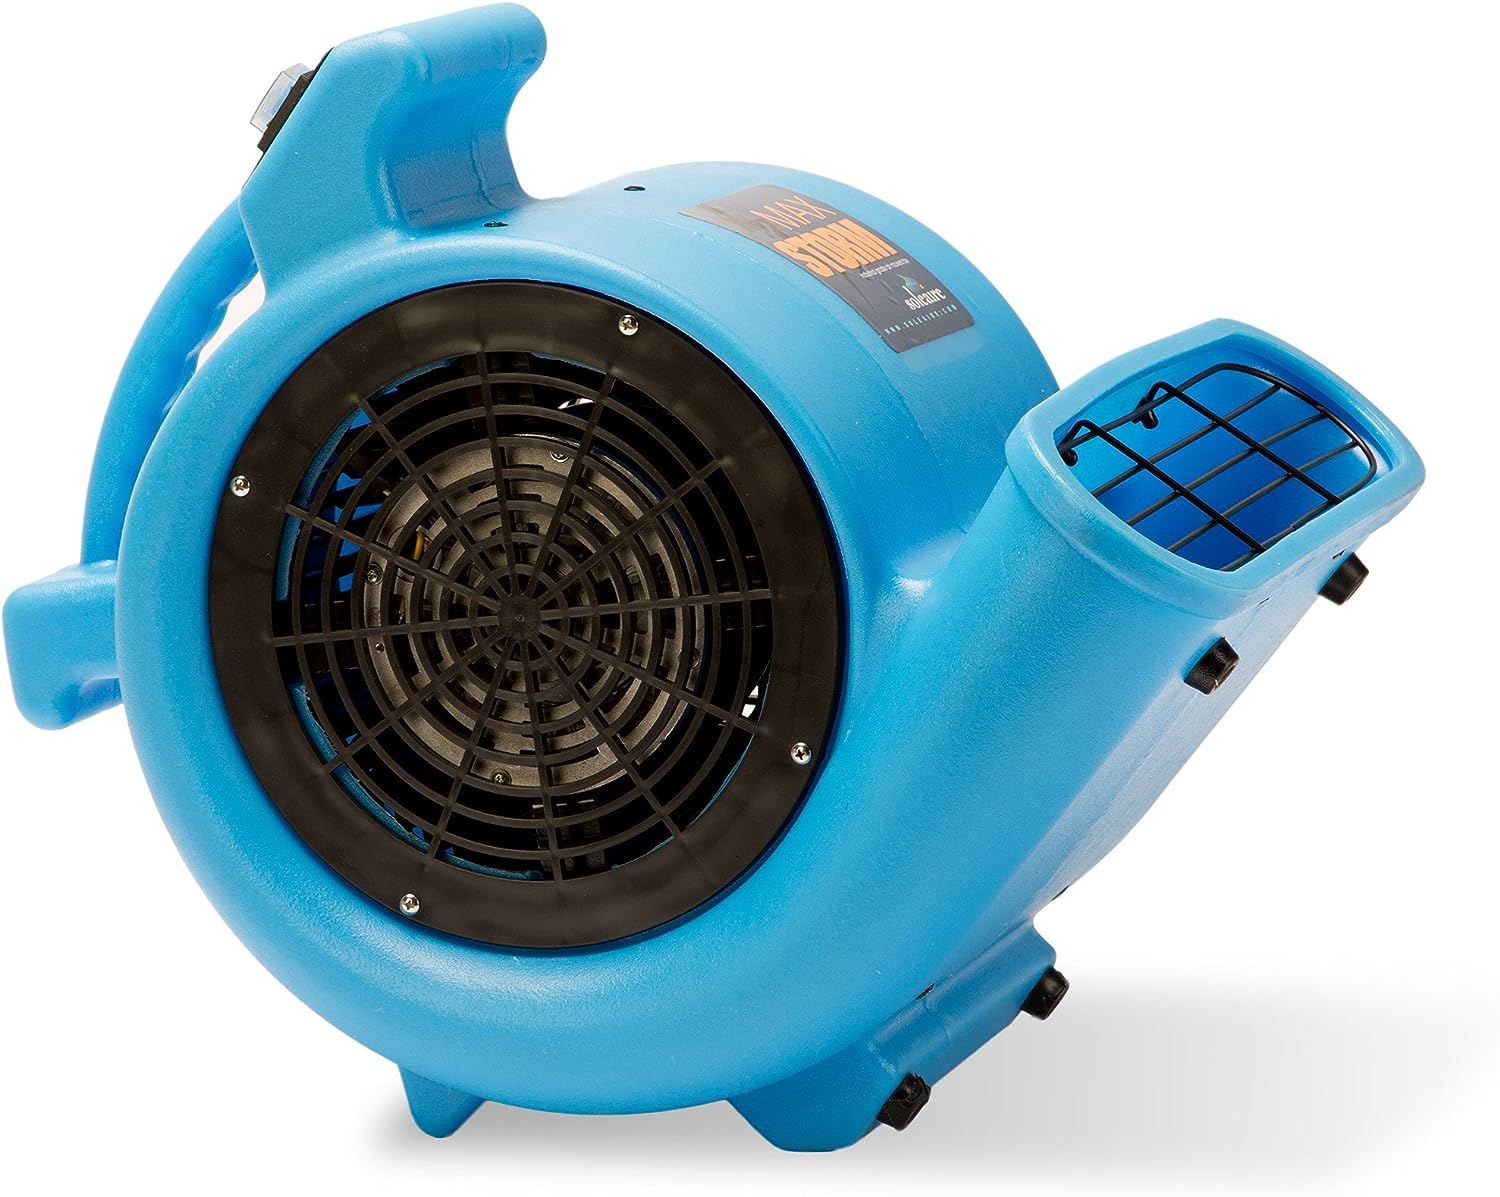 Floor dryer blower fan machine in bathroom drying wet floor Stock Photo